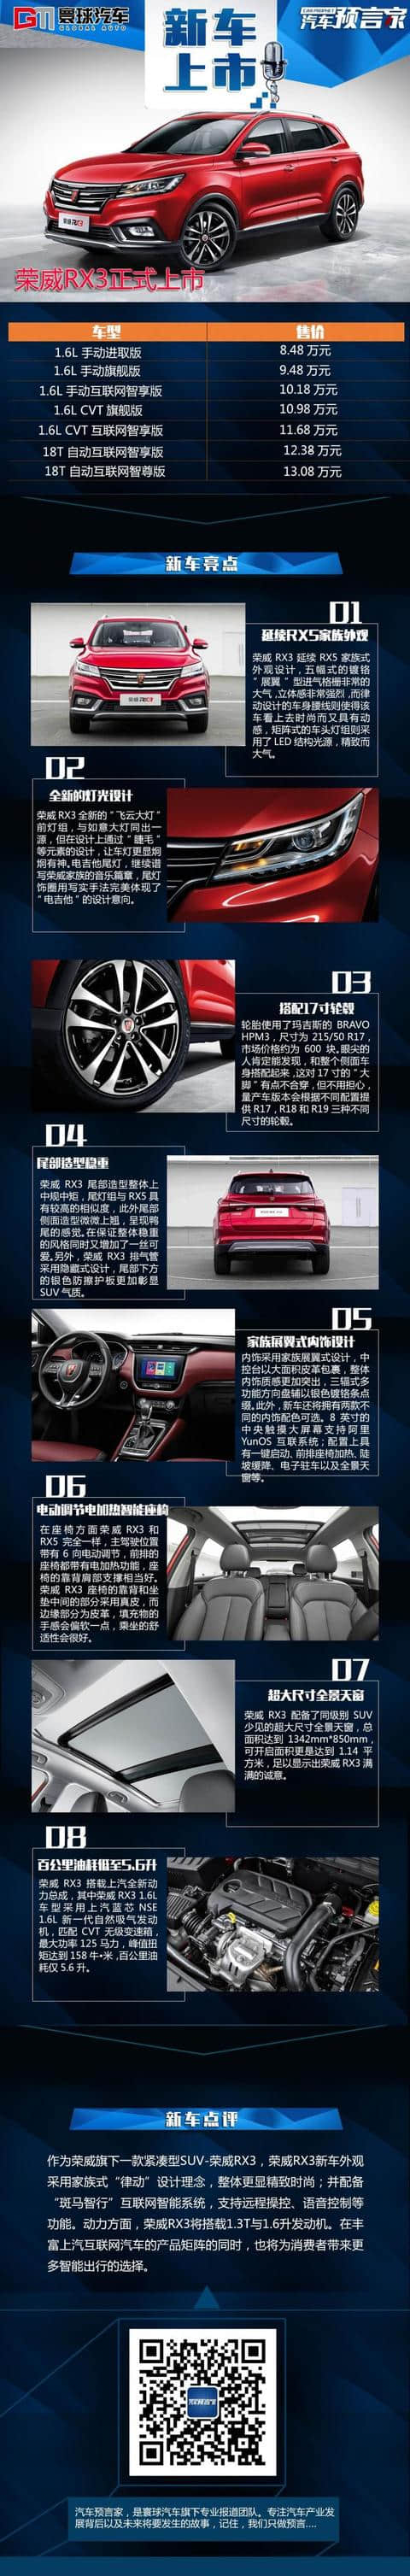 上汽荣威RX3正式上市 售价为：8.48万元-13.08万元